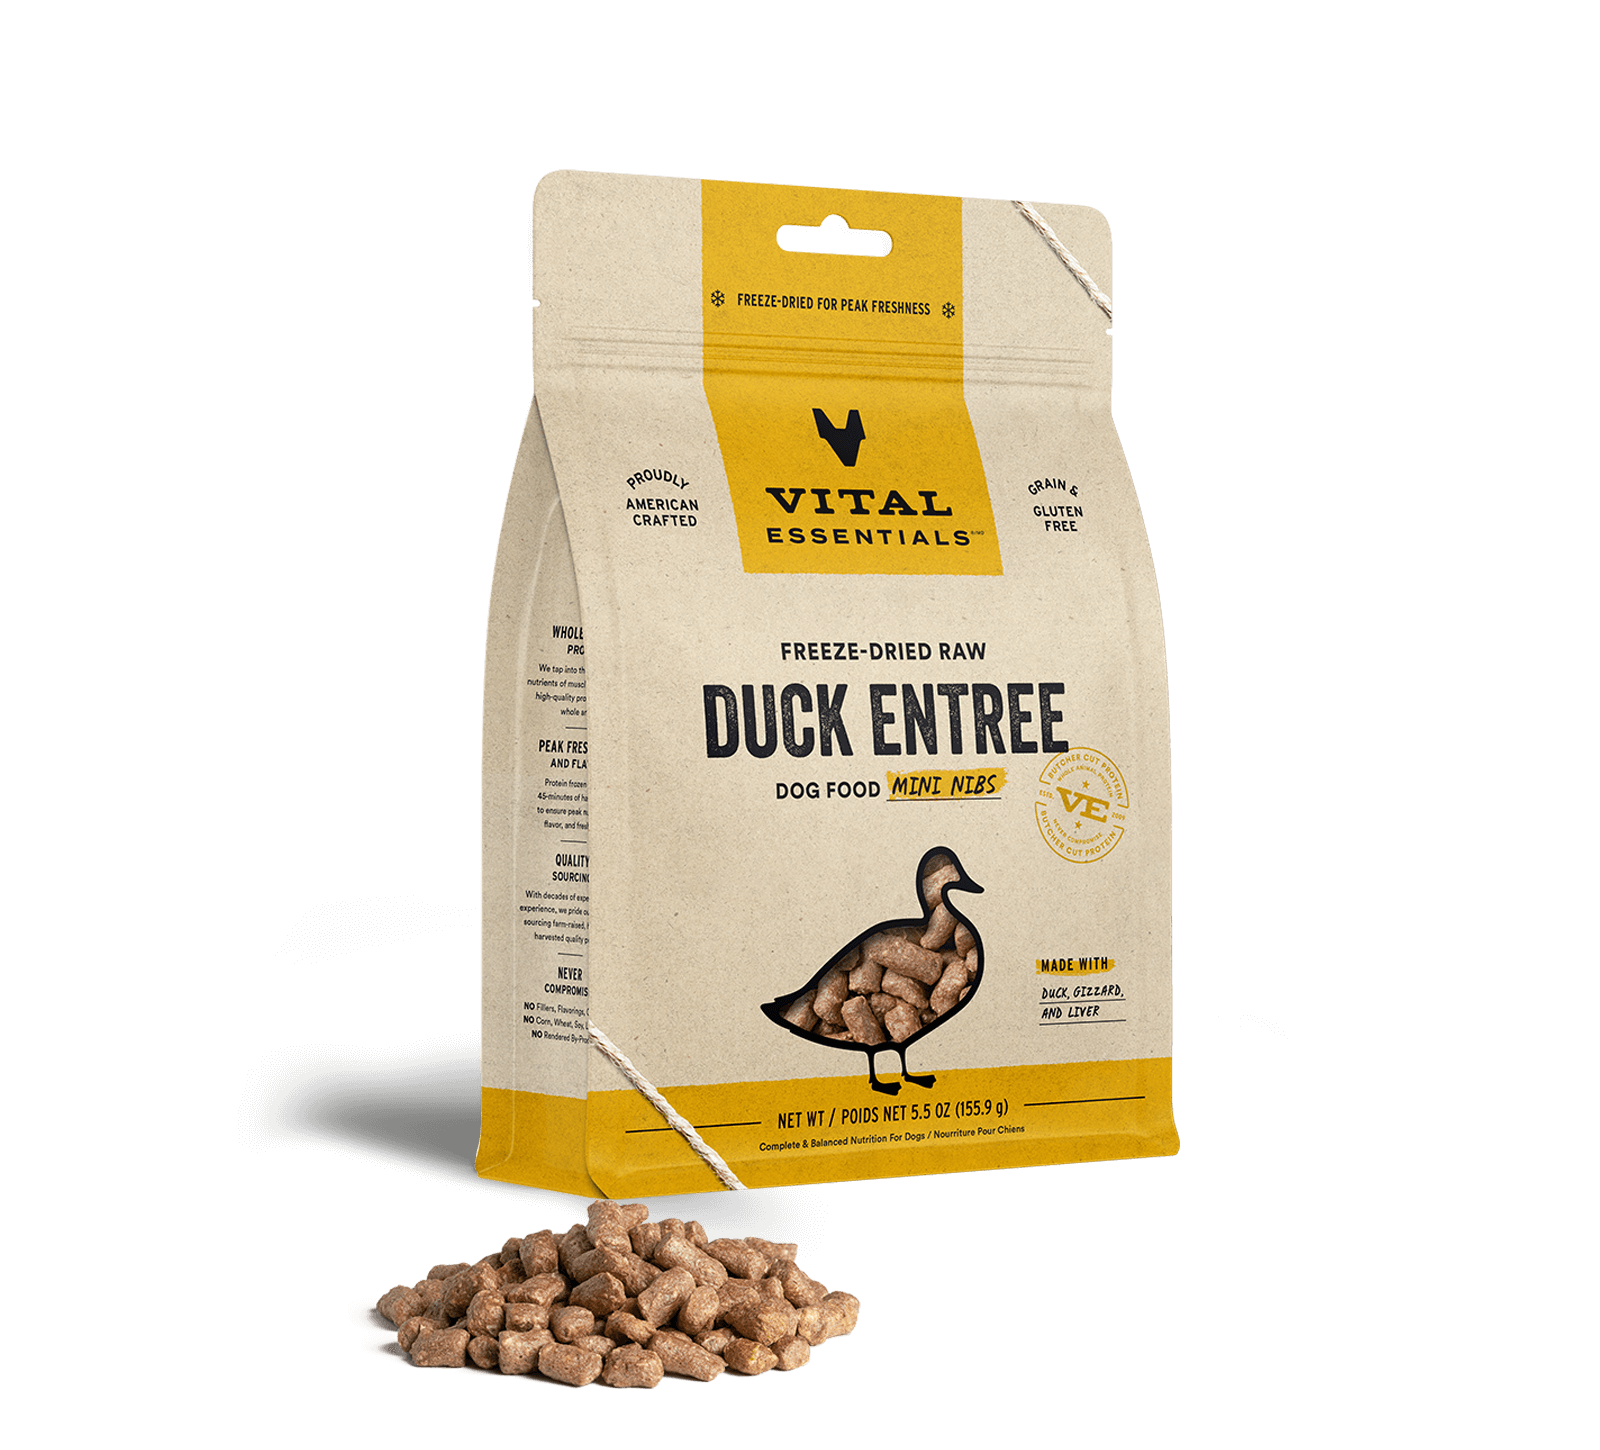 Vital Essentials Freeze-Dried Raw Duck Entree Dog Food Mini Nibs, 5.5 oz - Healing/First Aid